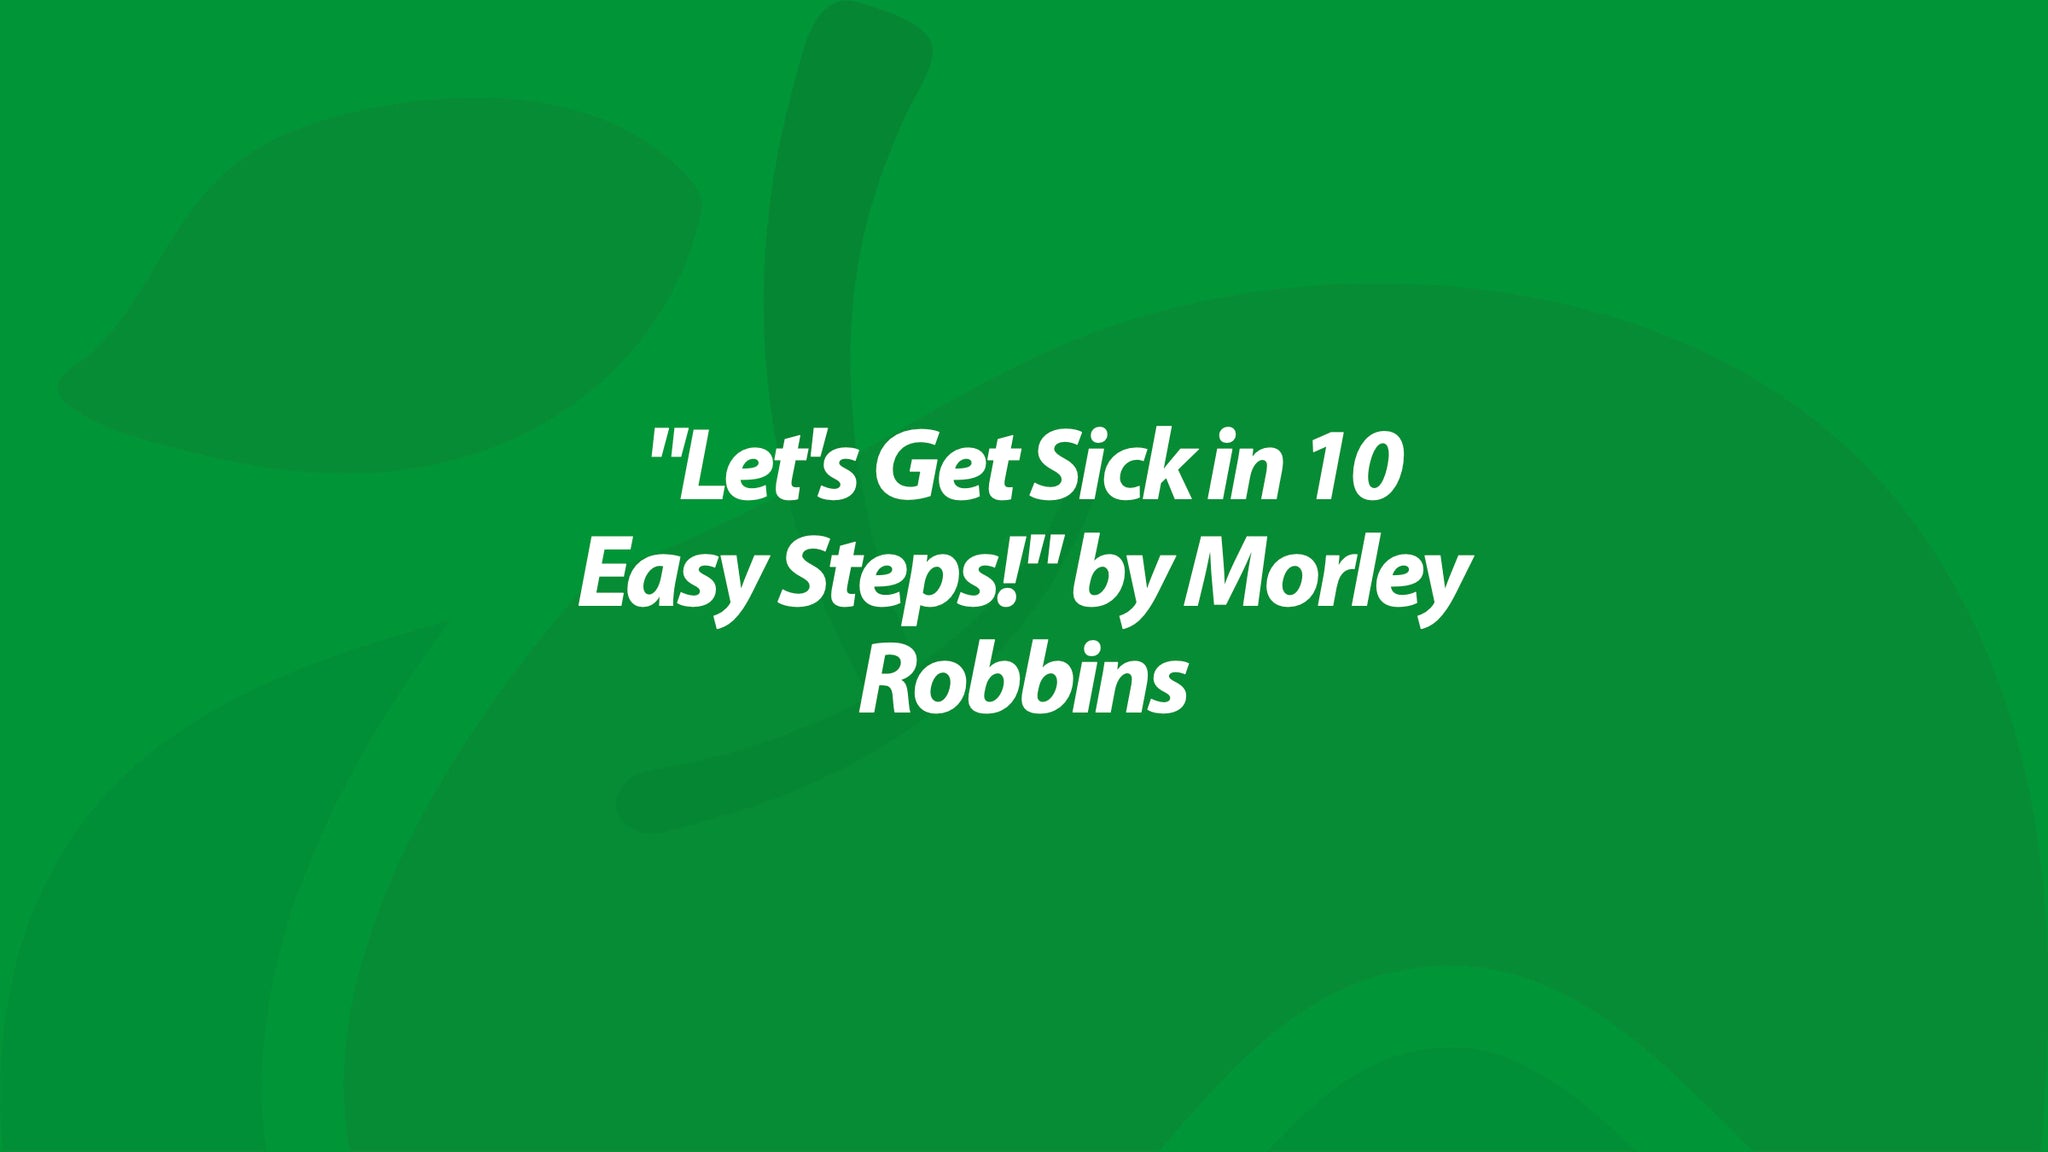 "Let's Get Sick in 10 Easy Steps!" by Morley Robbins